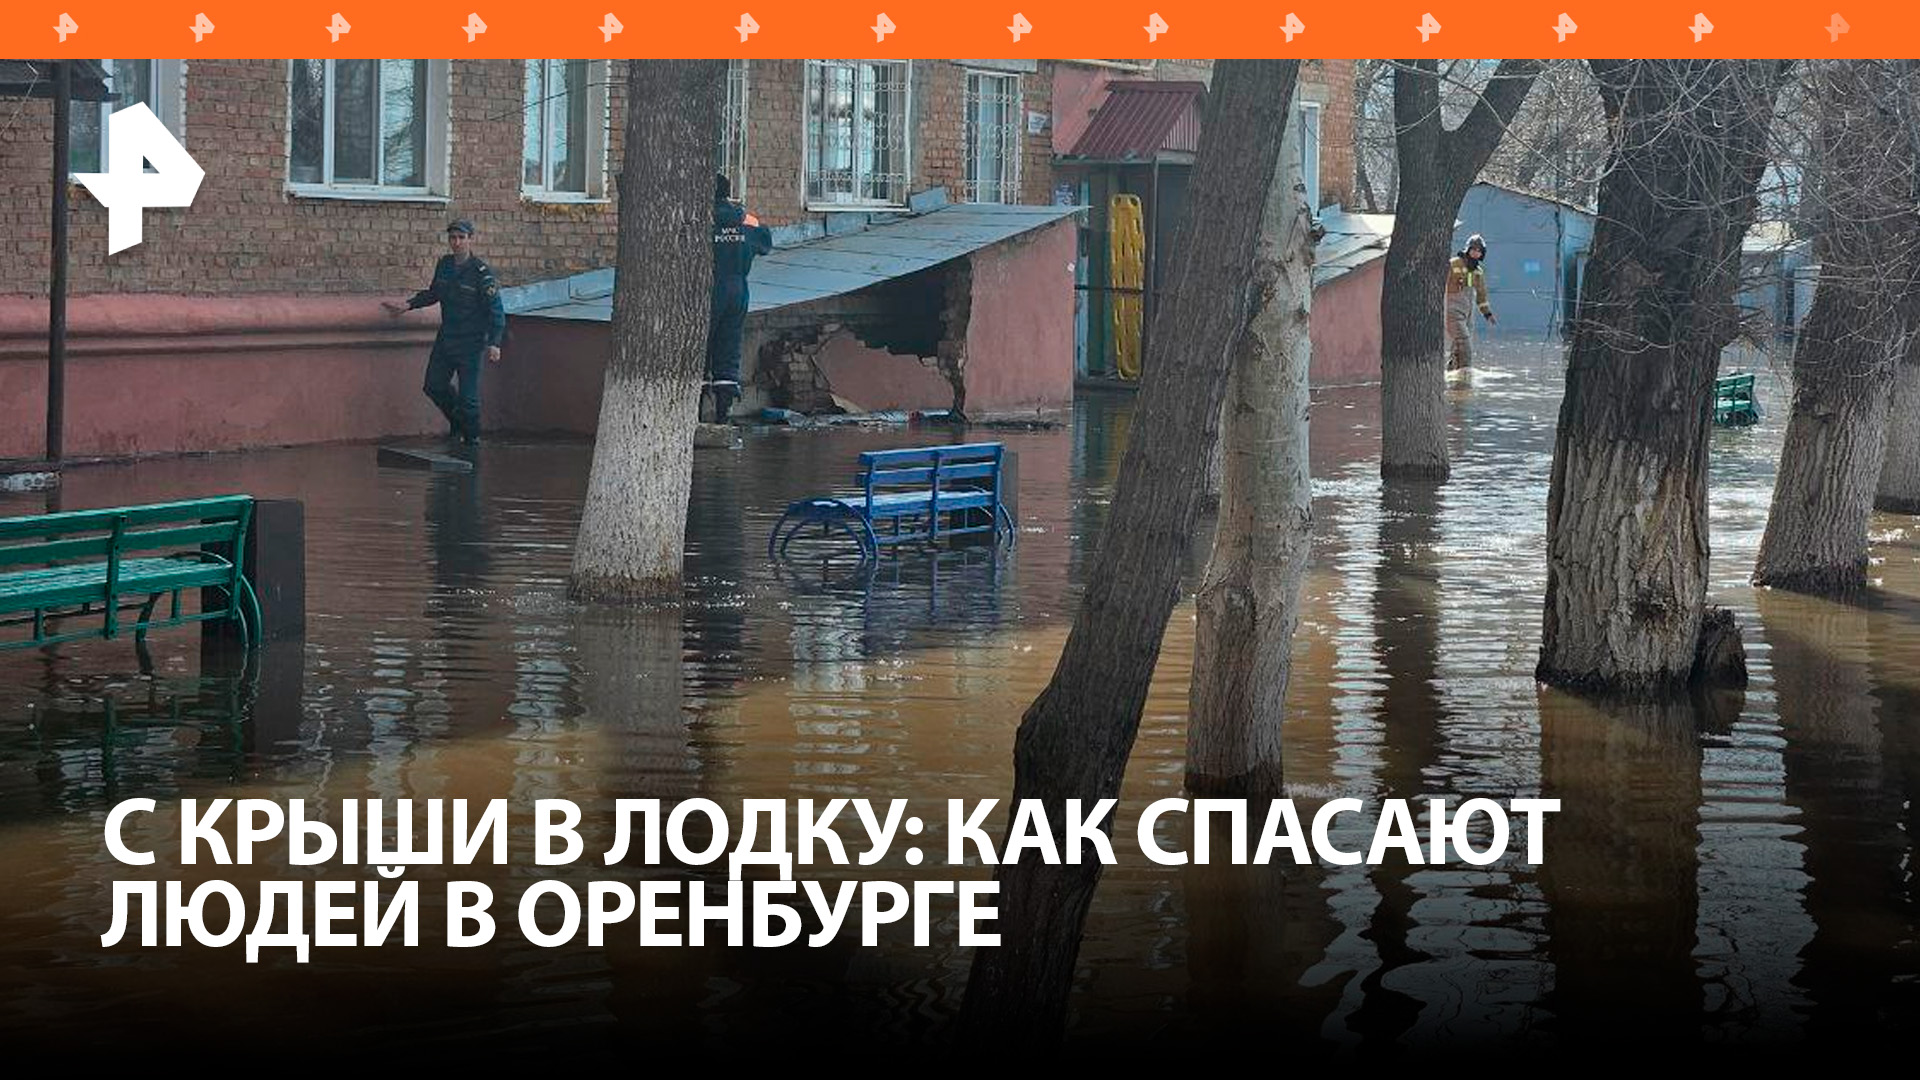 Прыгают с крыш в лодки: из затопленного Оренбурга вывозят людей / РЕН Новости